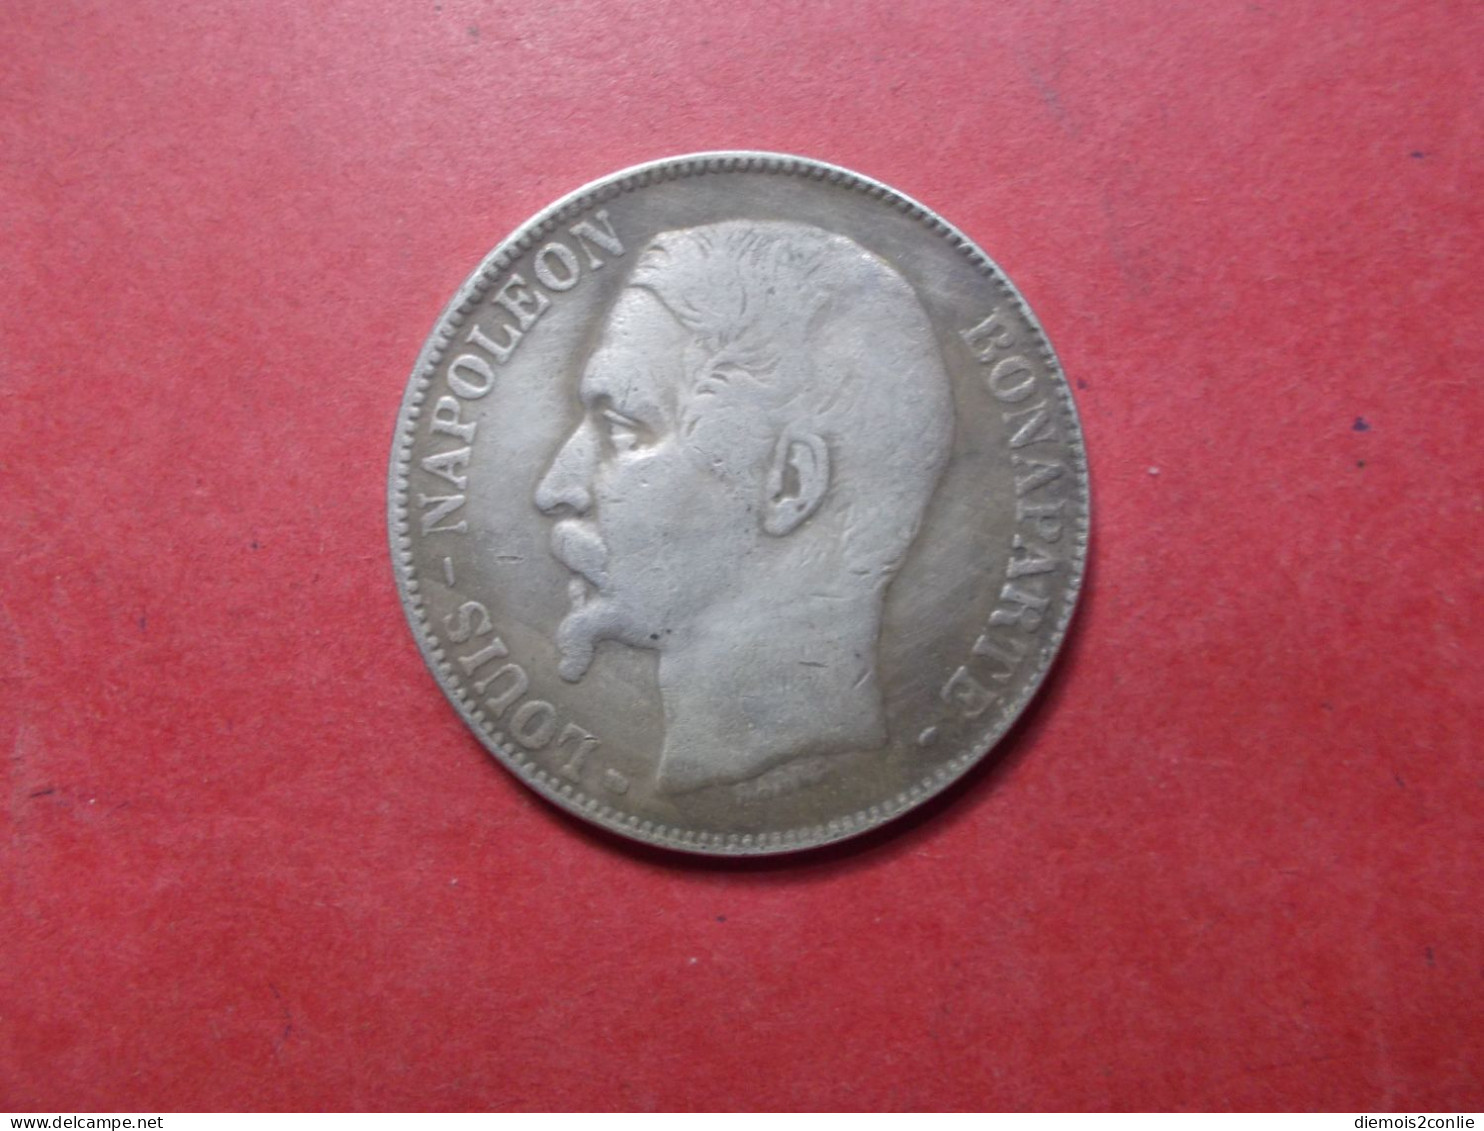 REPLIQUE COPIE Pièce Monnaie France 5 Francs Napoleon III (P19) - Variétés Et Curiosités